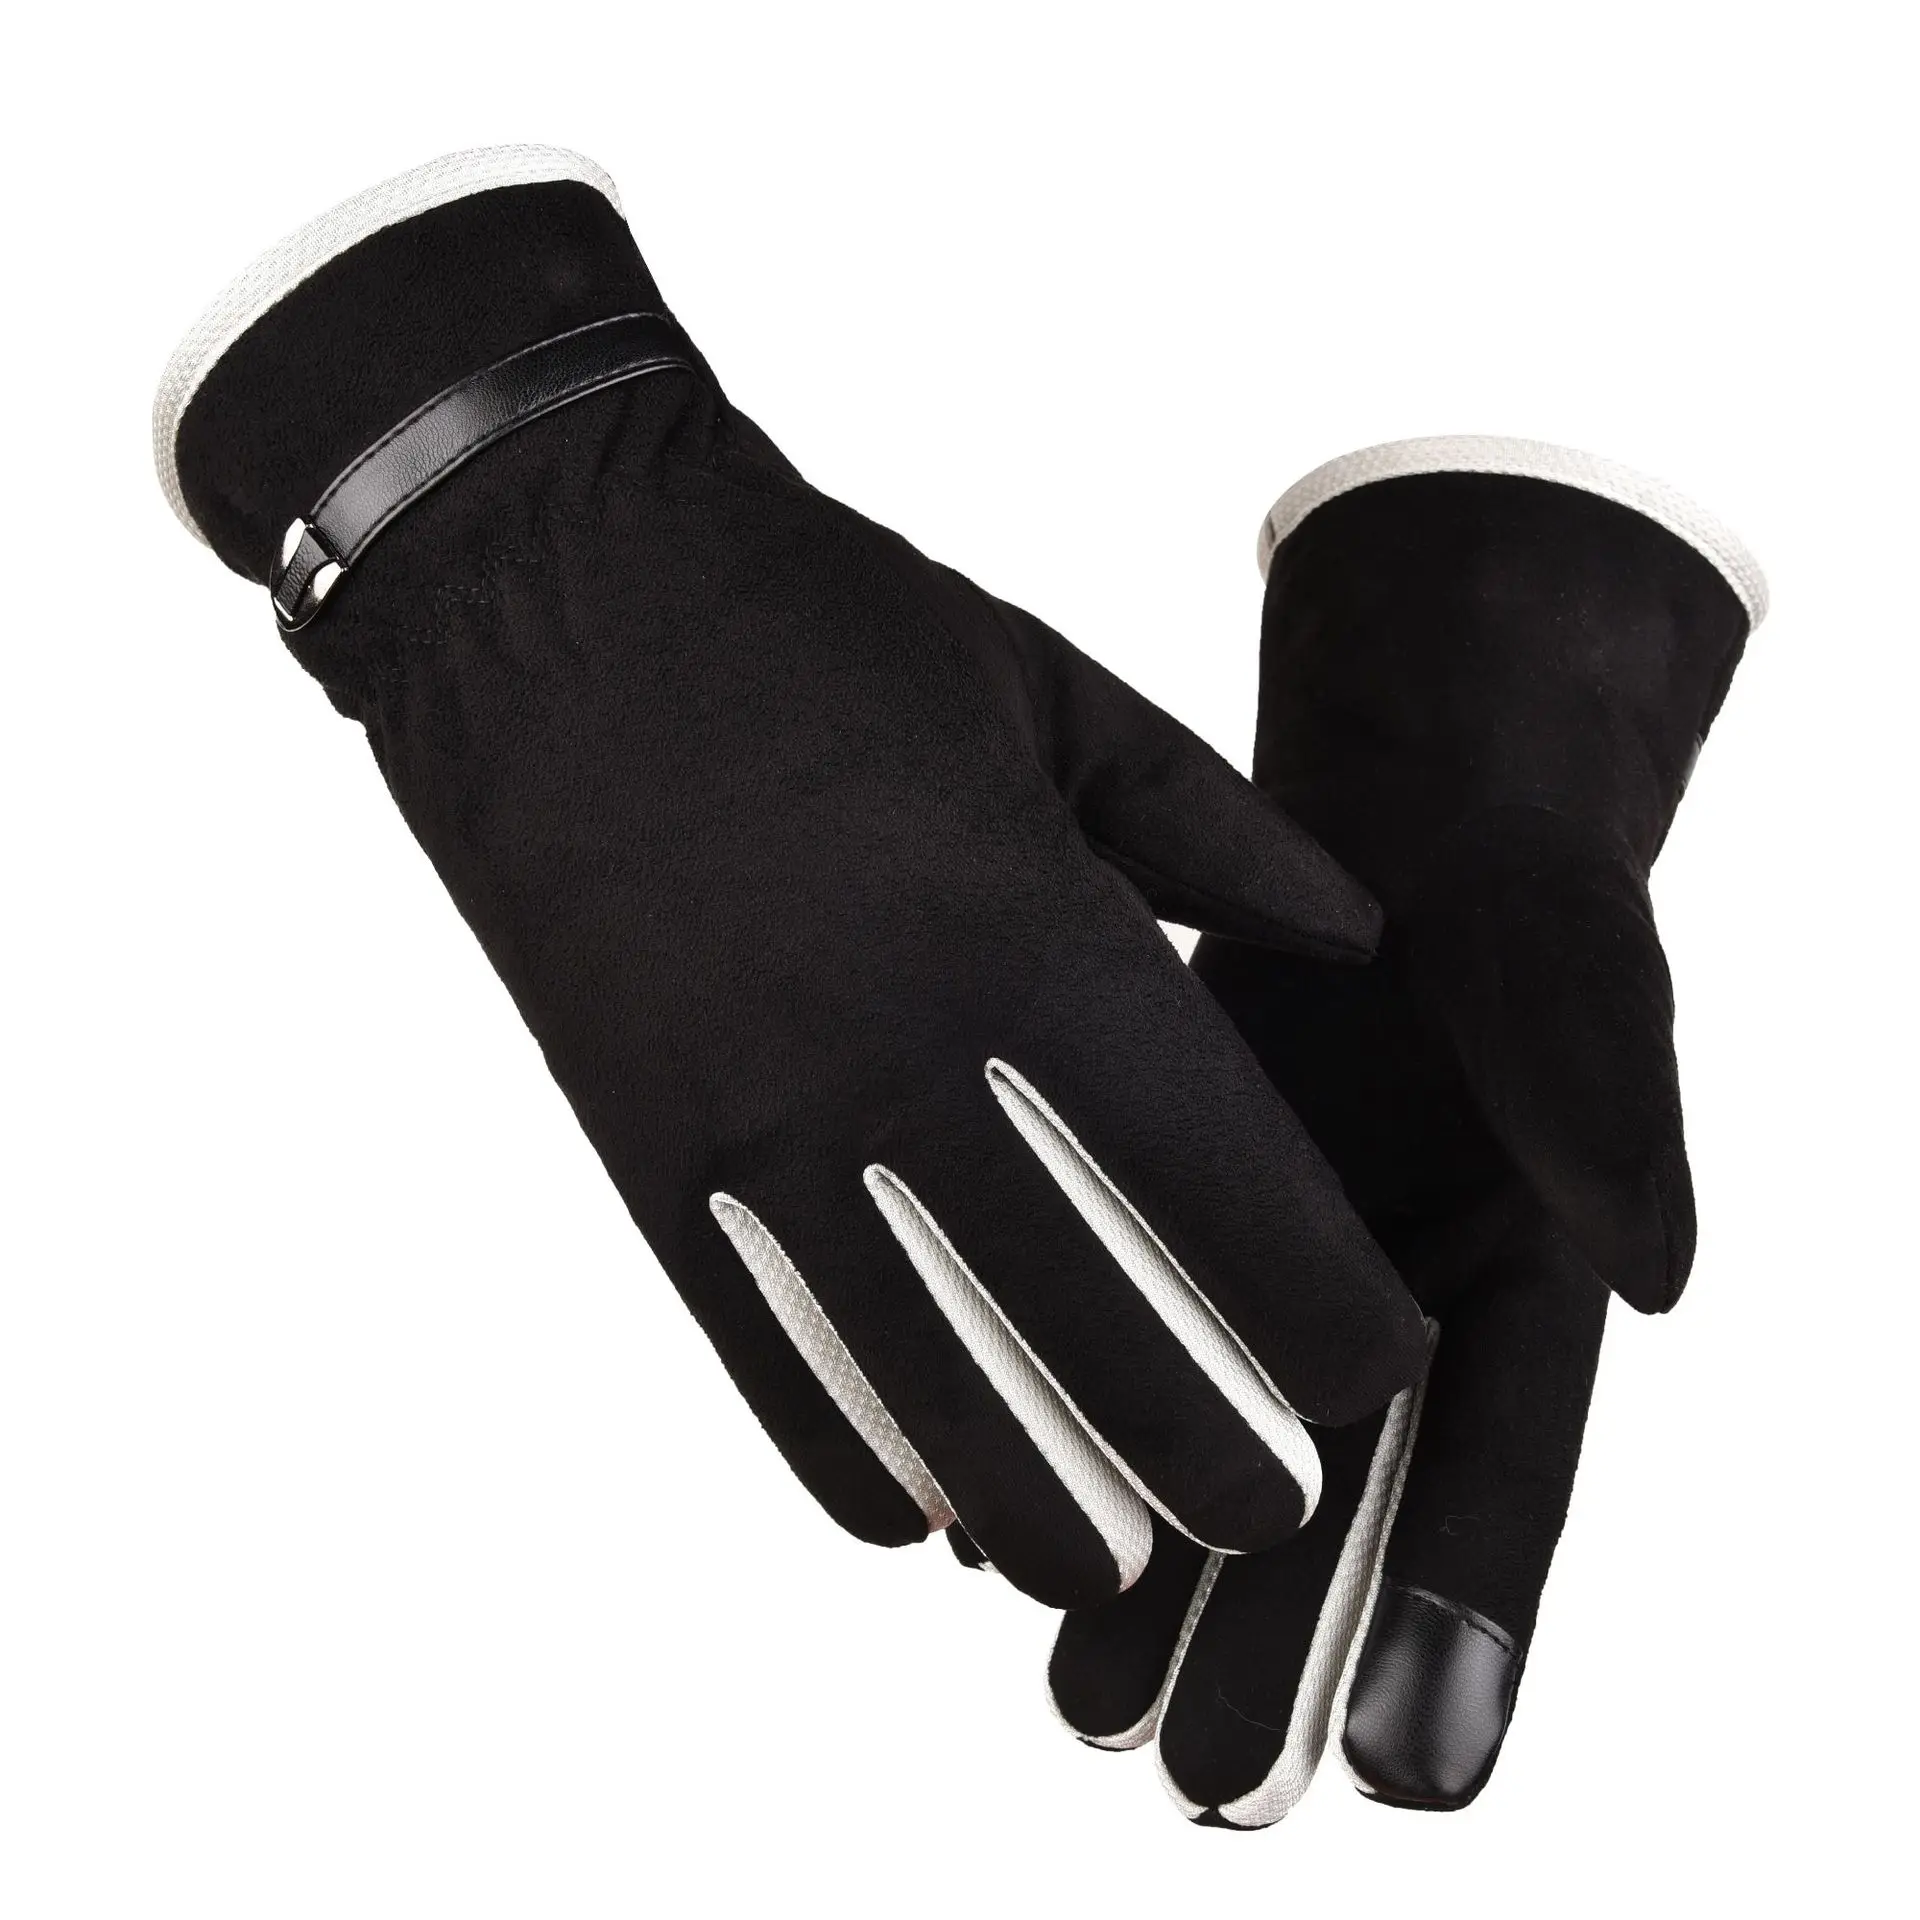 Теплые зимние перчатки для мужчин, лыжные перчатки для сноуборда, мотоциклетные перчатки для езды, зимние перчатки для сенсорного экрана, ветрозащитные перчатки черного цвета